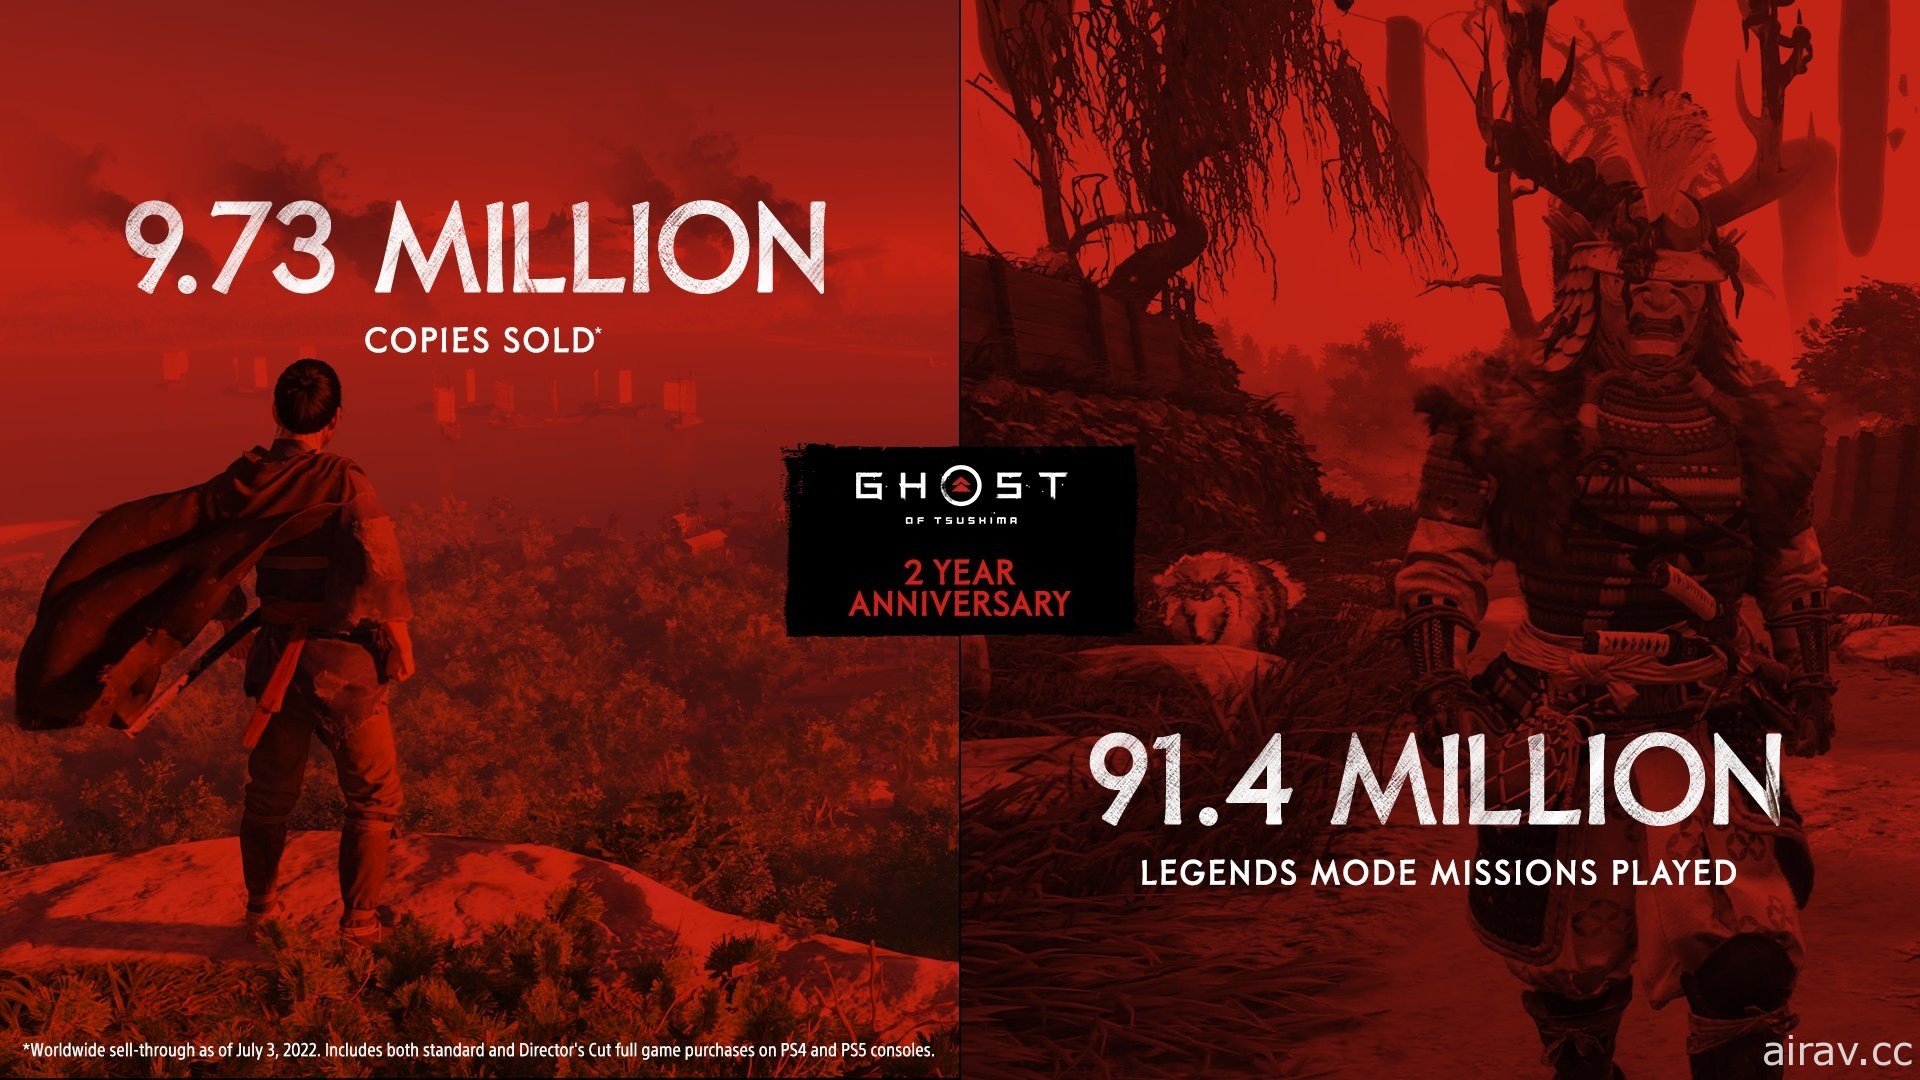 《對馬戰鬼》上市屆滿 2 周年銷售突破 973 萬套 官方公布最新遊玩統計數據